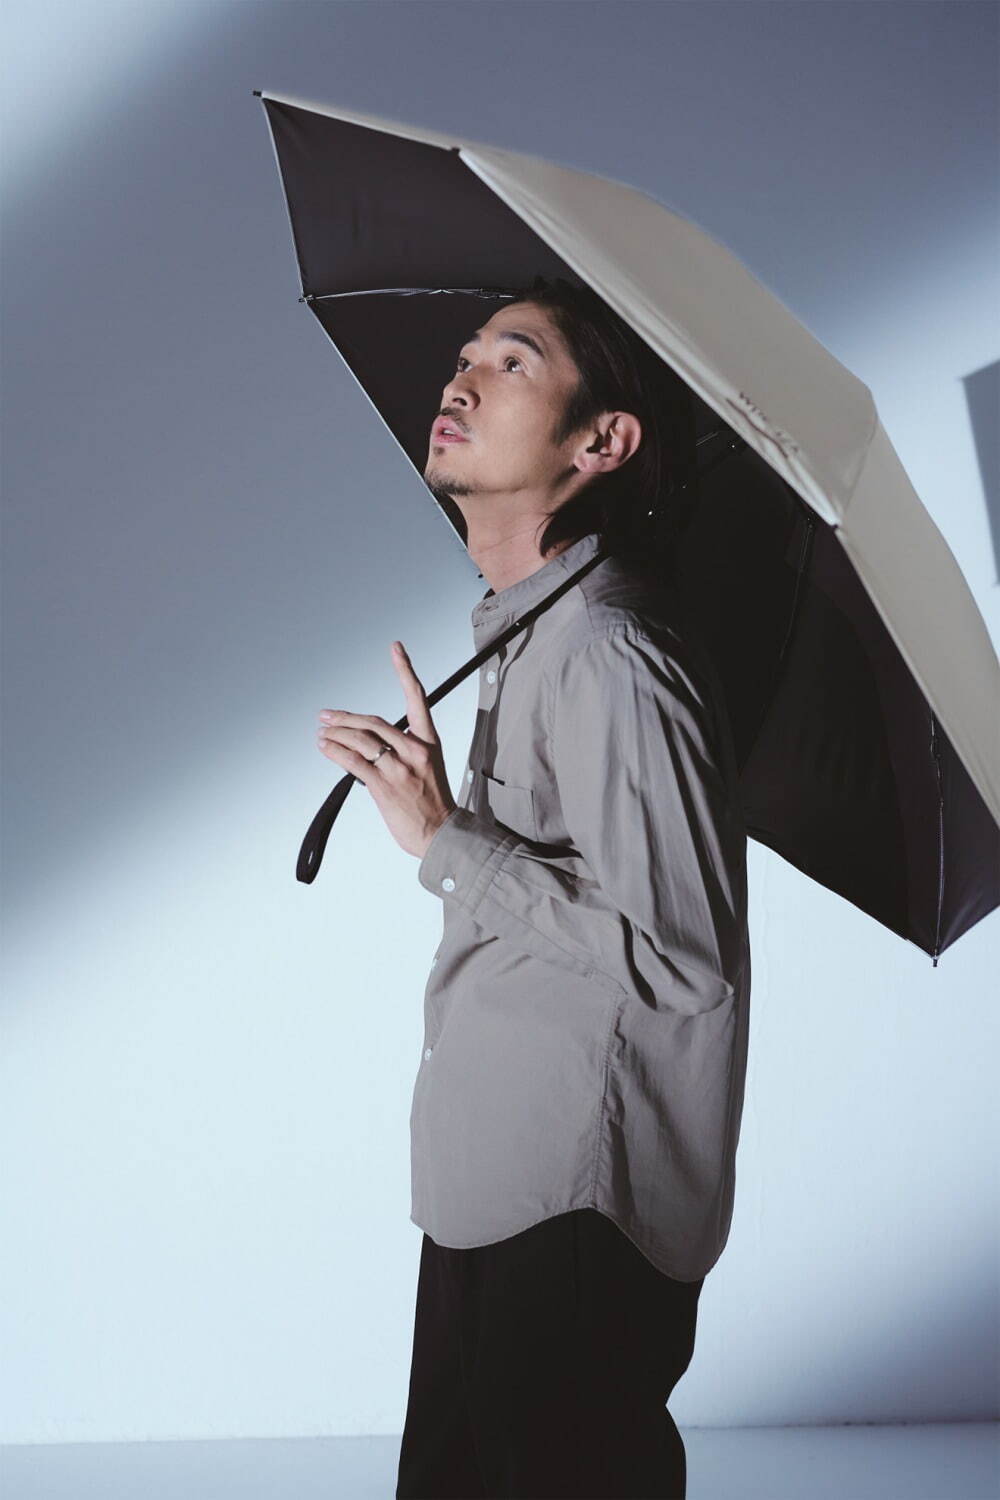 男性向け晴雨兼用傘ブランド Wpc Iza誕生 晴れの日も雨の日もハイスペックな折り畳み傘 ファッションプレス